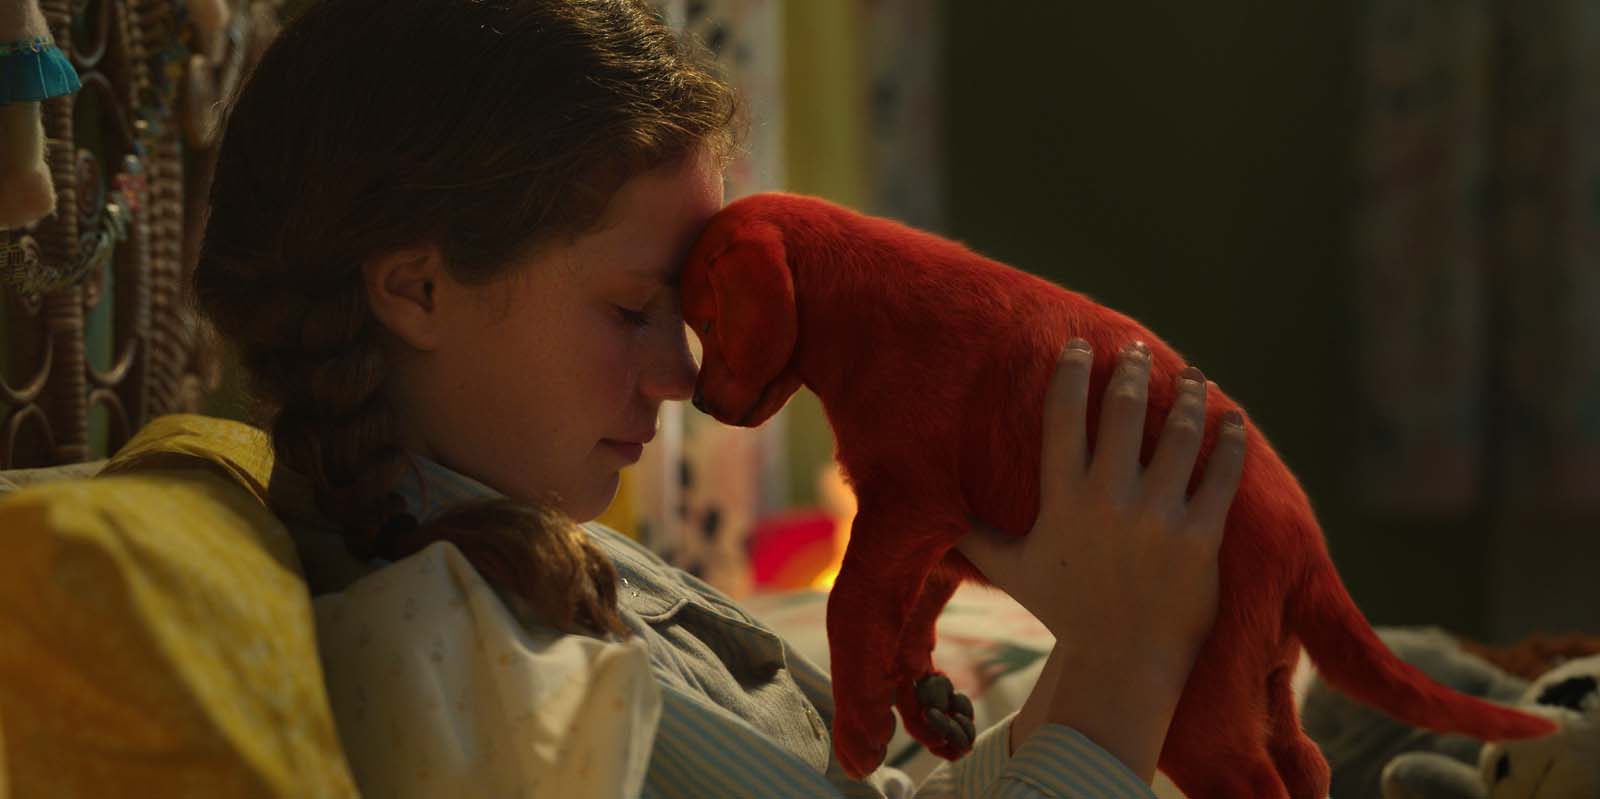 Szenenbild 1 vom Film Clifford der große rote Hund